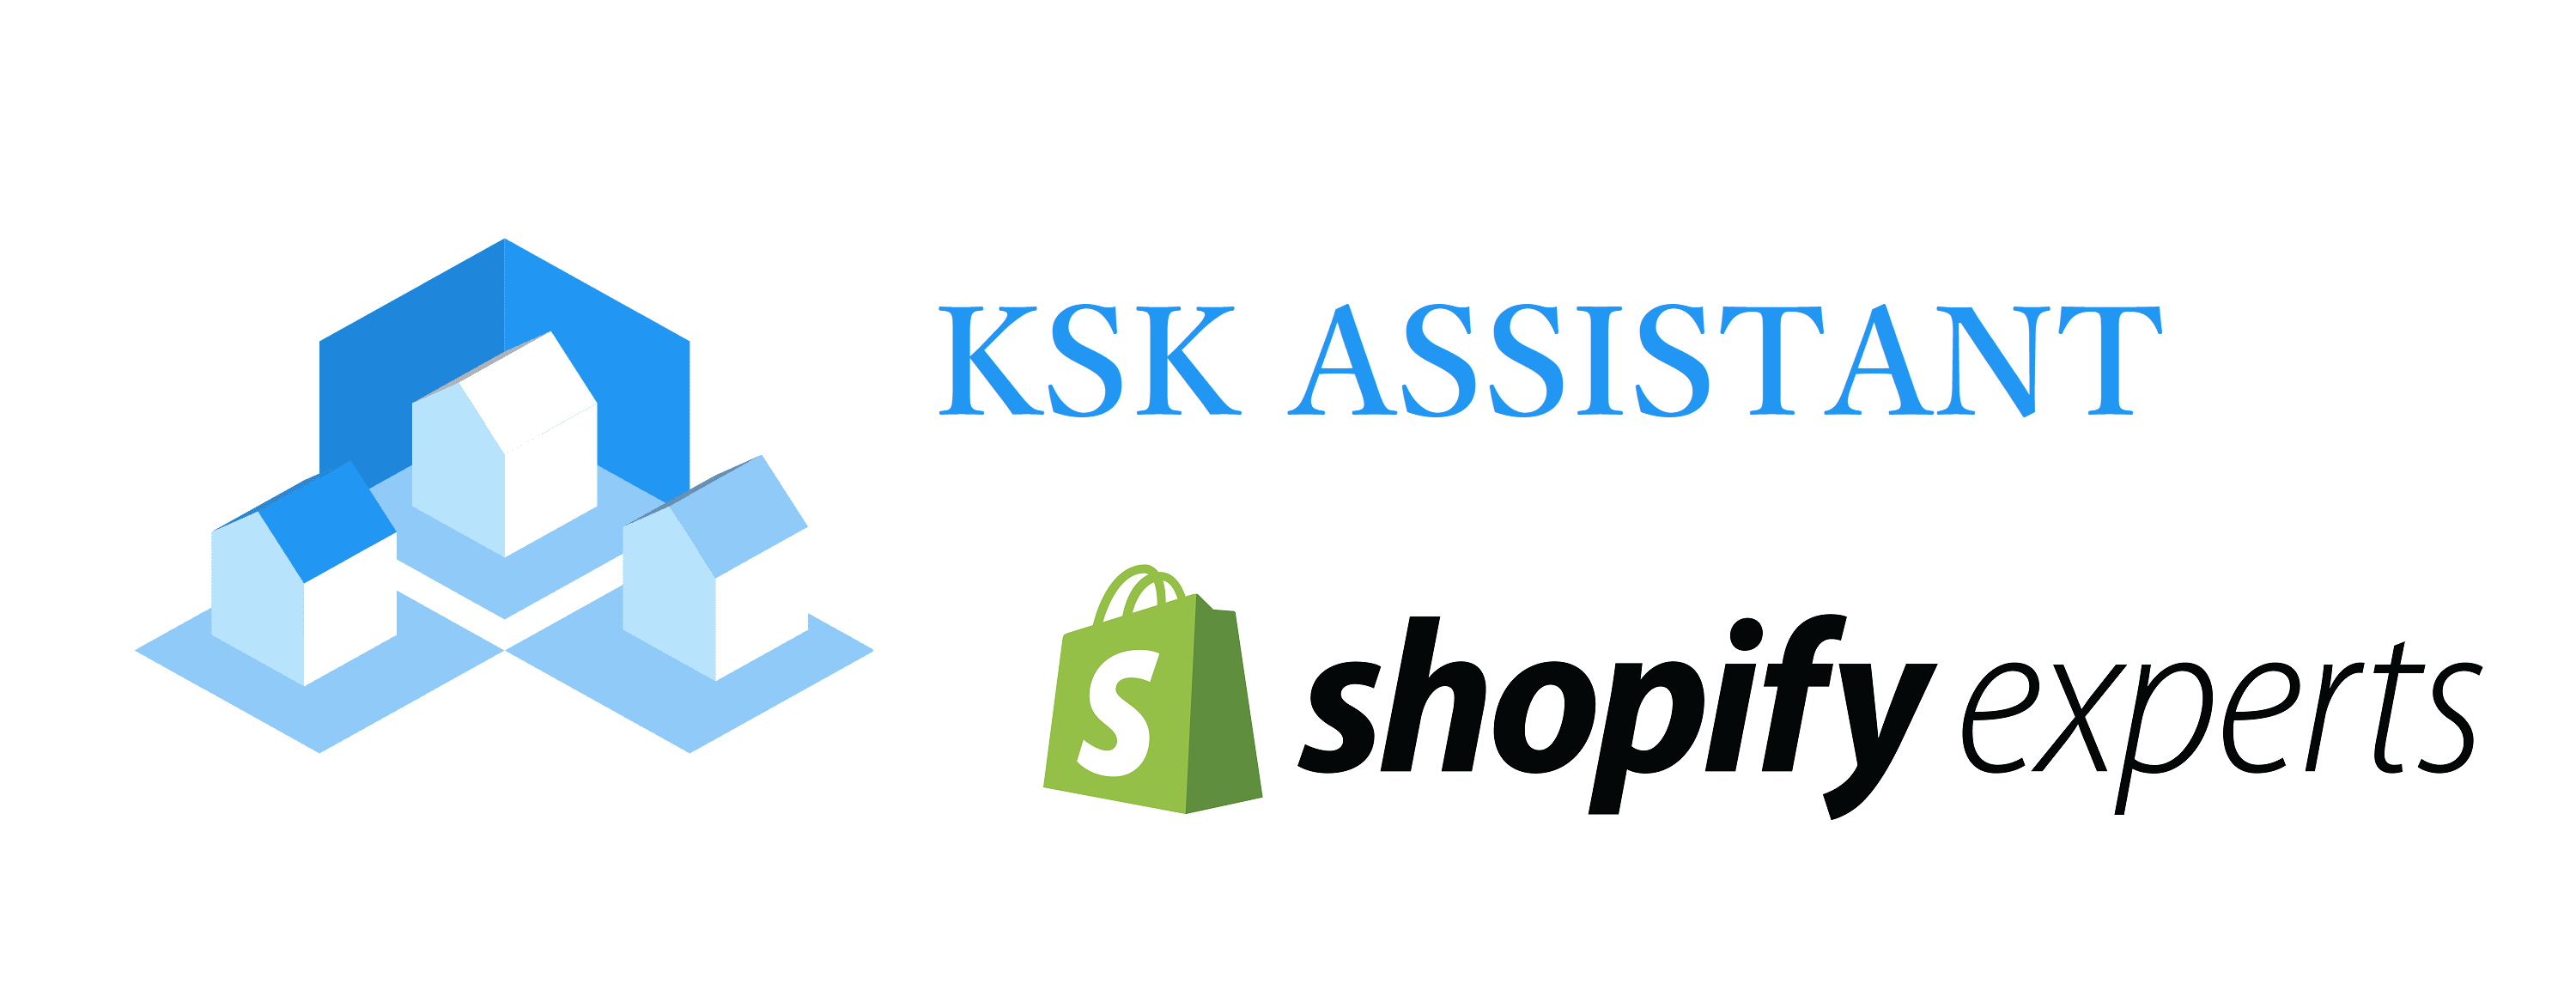 KSK ASSISTANT x Shopify